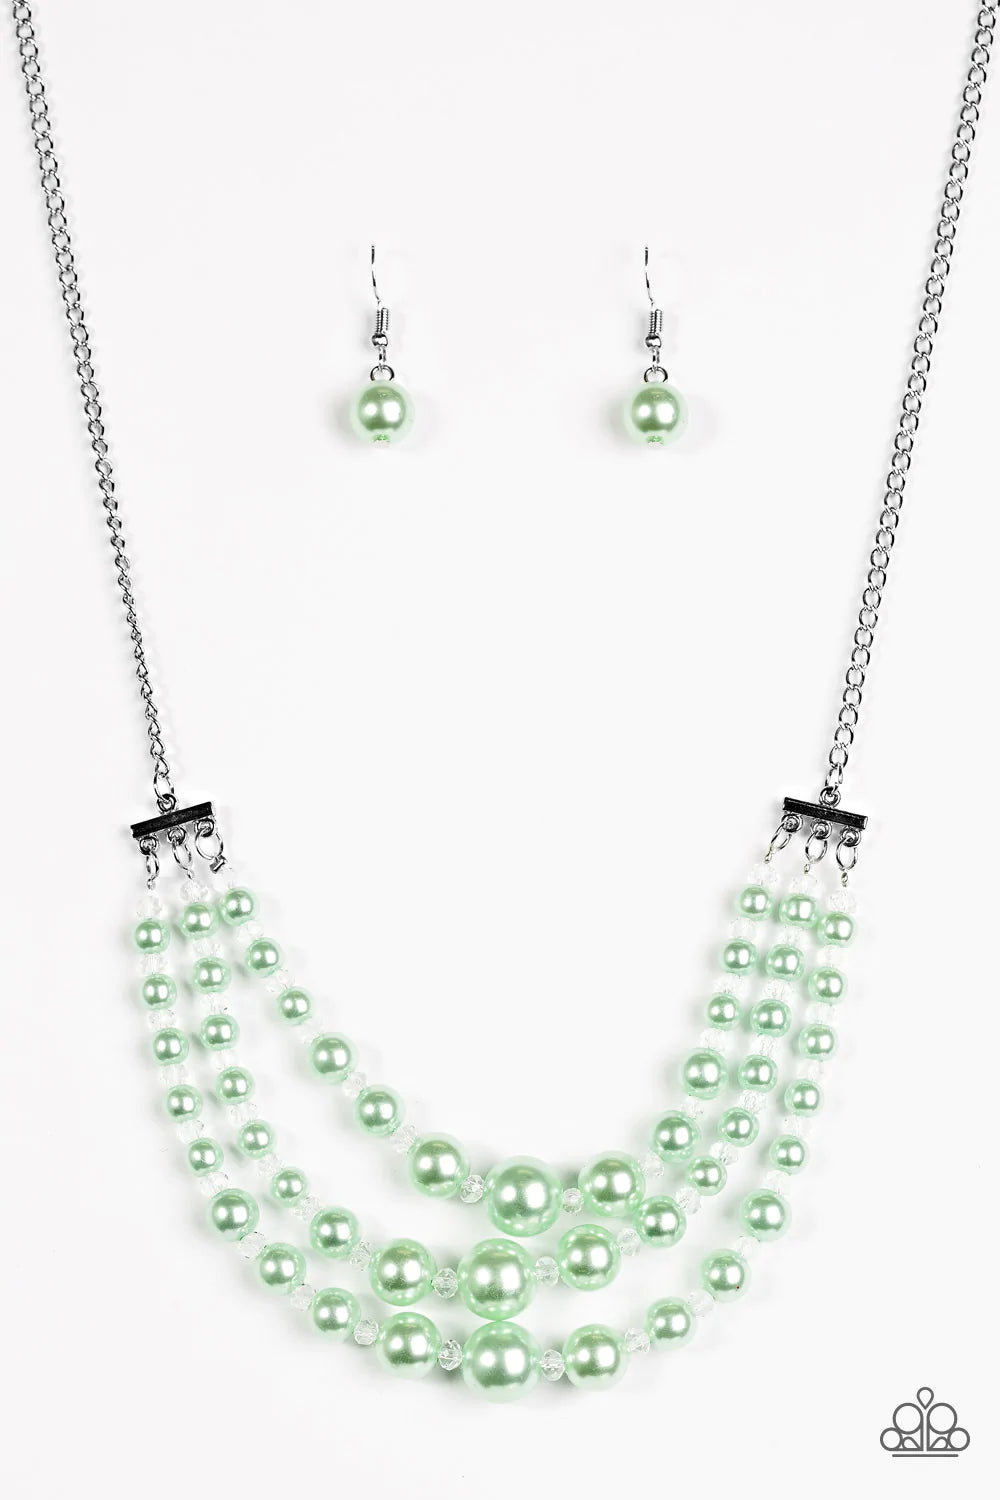 Paparazzi Necklace ~ Spring Social - Green